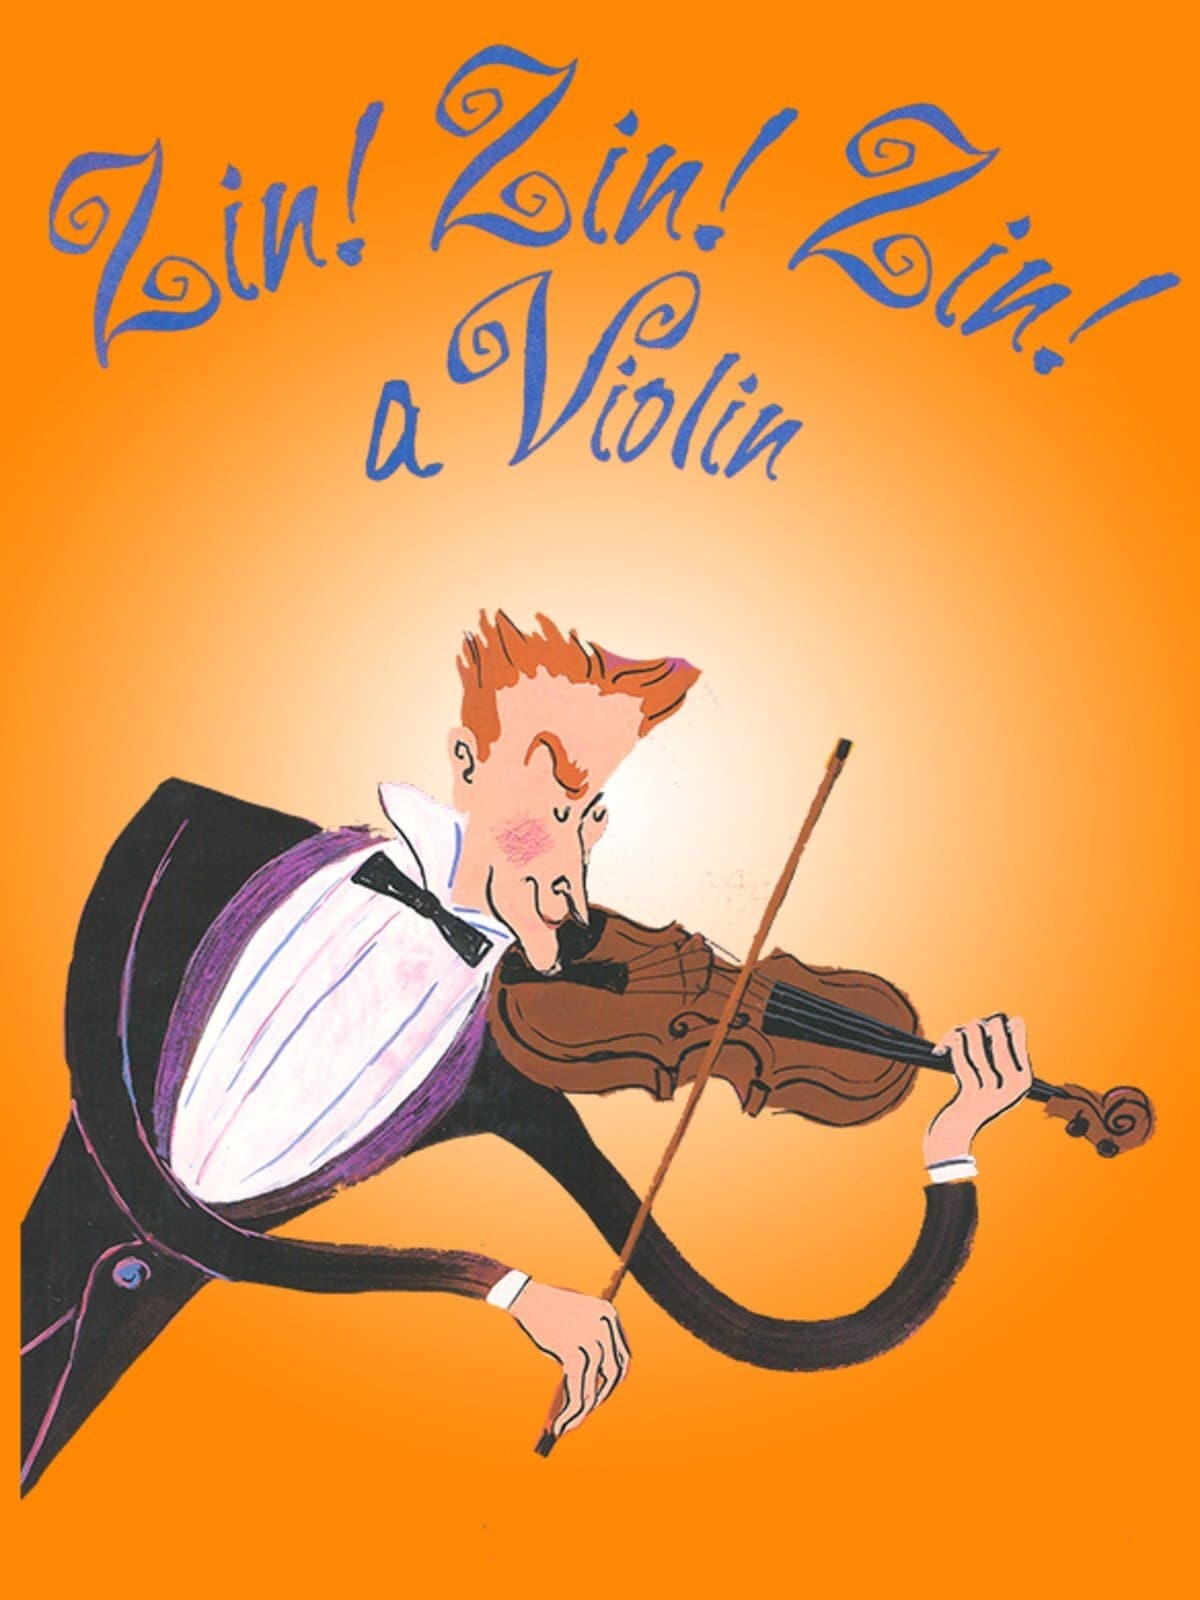 Zin! Zin! Zin! A Violin!